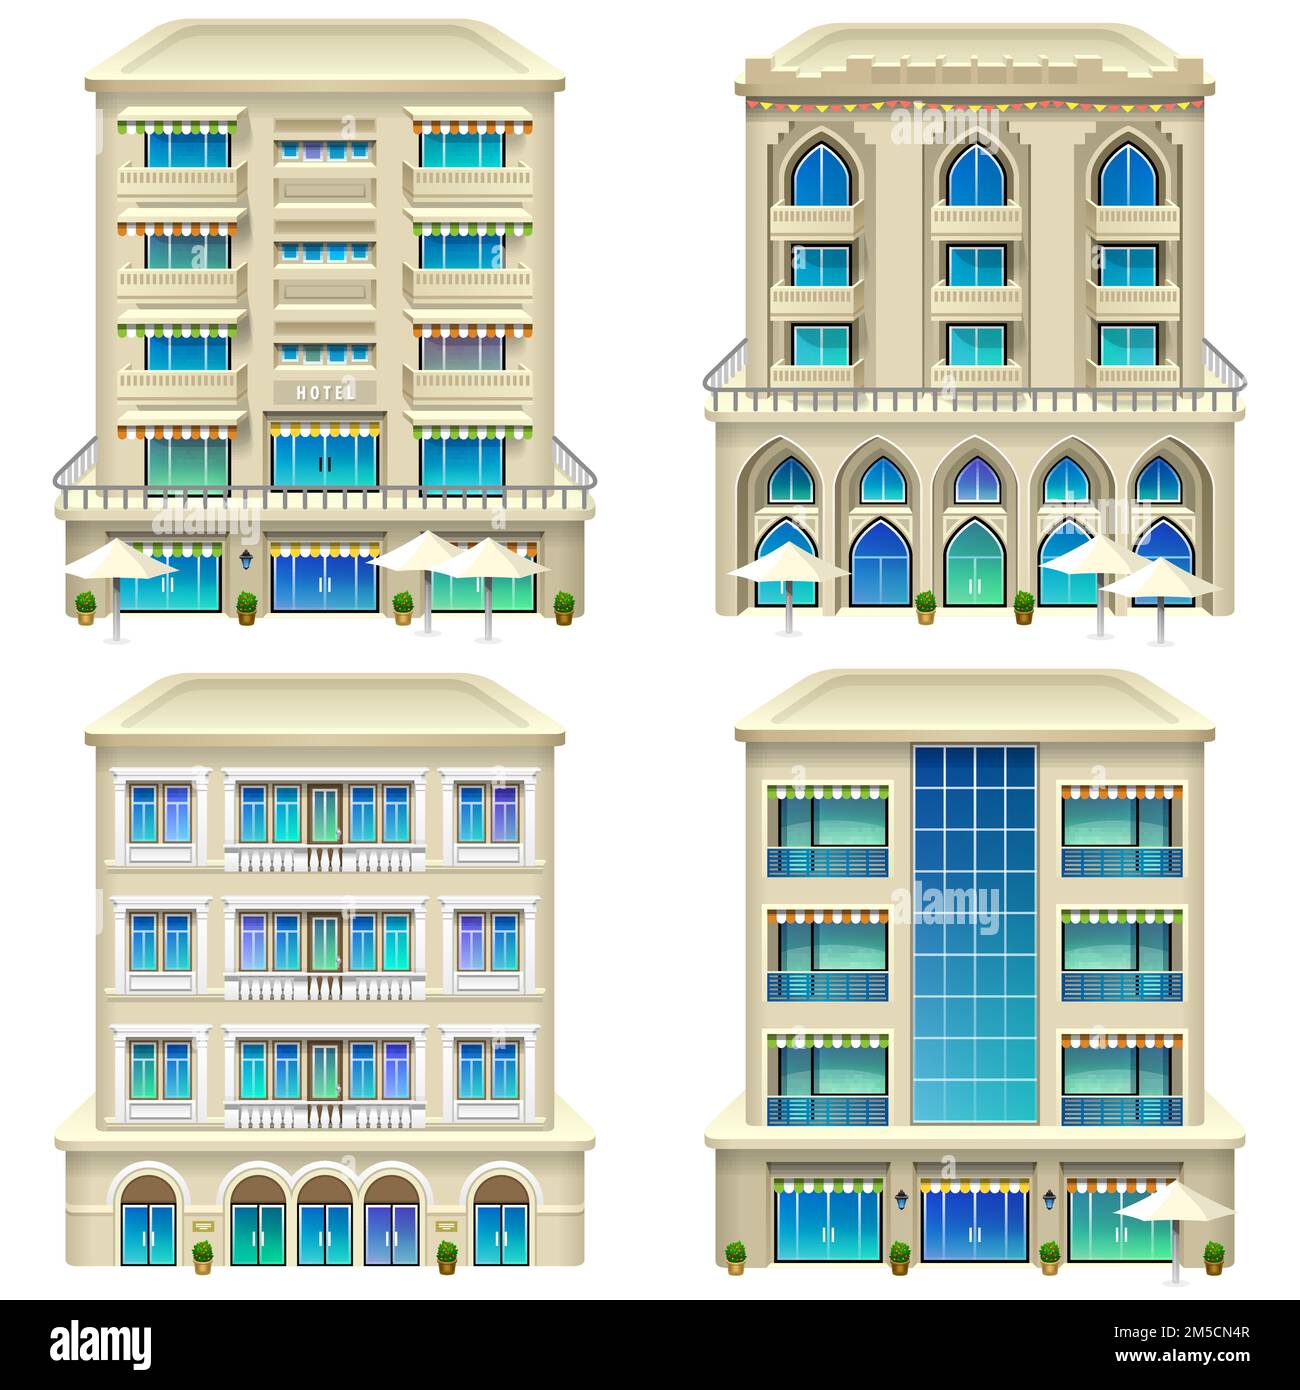 Detaillierte Darstellung der Hotelsymbole. Vector eps 10. Stock Vektor